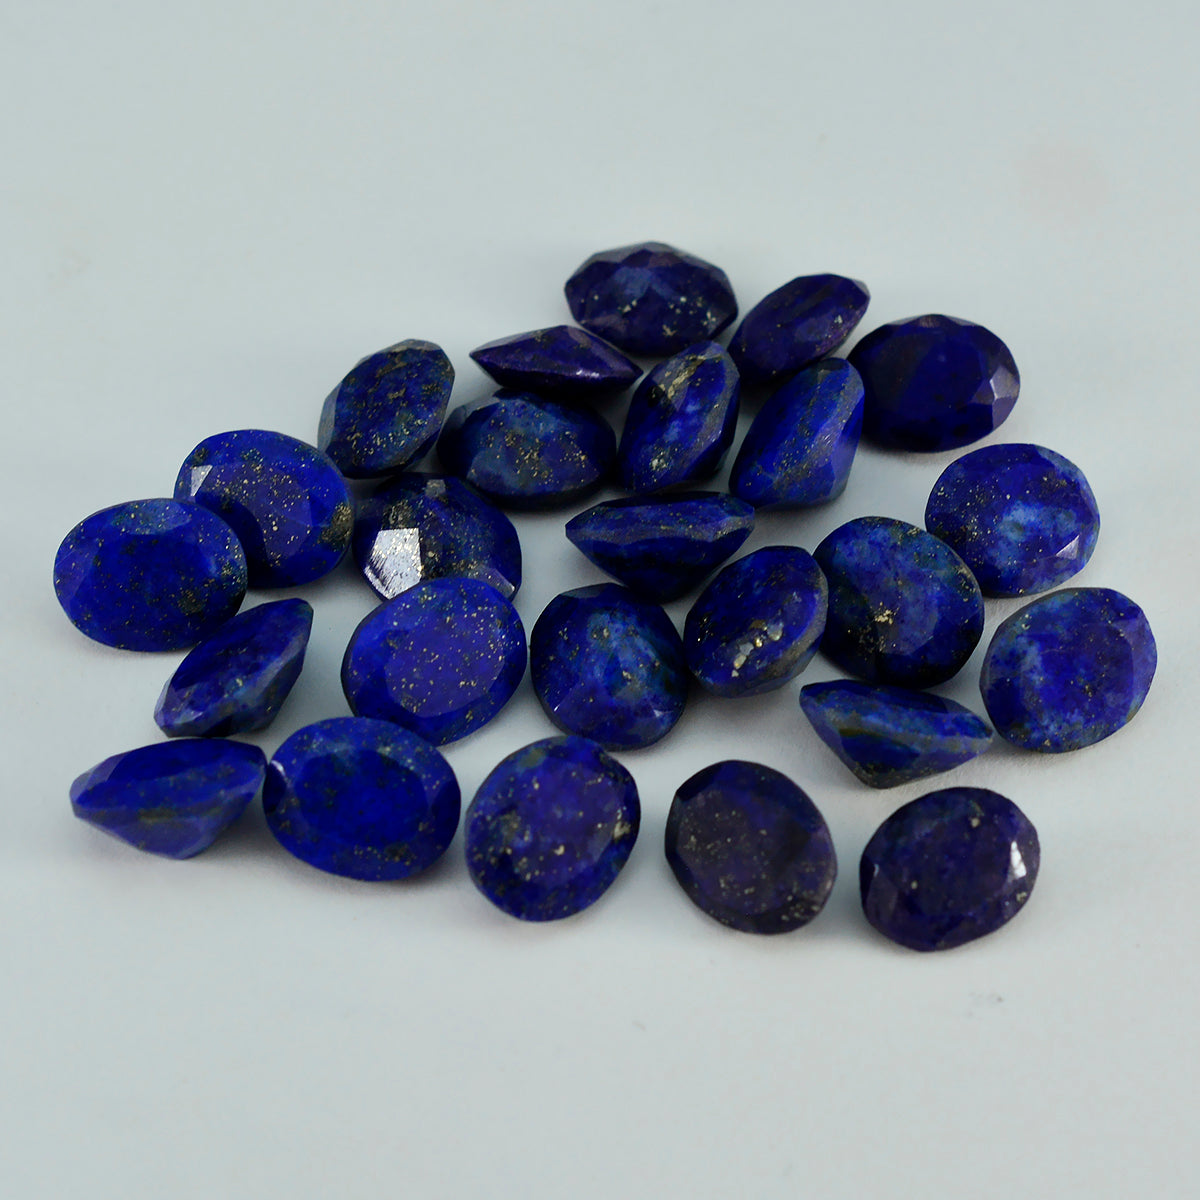 Riyogems 1 pièce véritable lapis lazuli bleu à facettes 10x12mm forme ovale qualité étonnante pierre en vrac